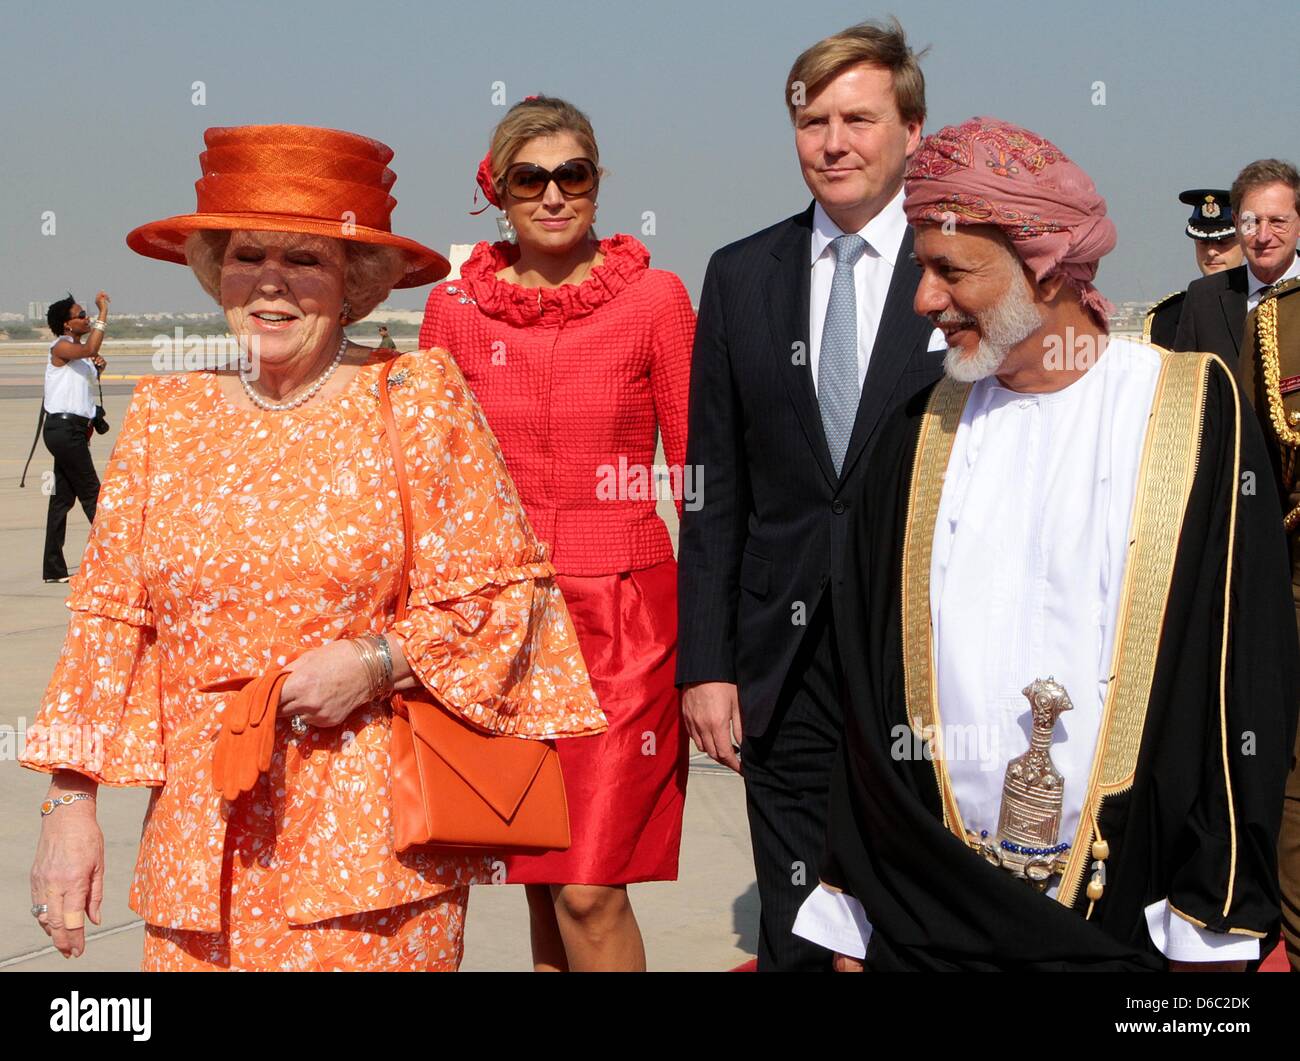 https://c8.alamy.com/compfr/d6c2dk/le-sultan-qaboos-bin-said-sultan-doman-l-se-felicite-de-la-reine-beatrix-des-pays-bas-l-le-prince-willem-alexander-2e-r-et-de-la-princesse-maxima-2l-a-laeroport-de-muscat-oman-10-janvier-2012-les-royals-neerlandais-sont-sur-une-visite-detat-de-trois-jours-a-oman-photo-albert-nieboer-pays-bas-out-d6c2dk.jpg